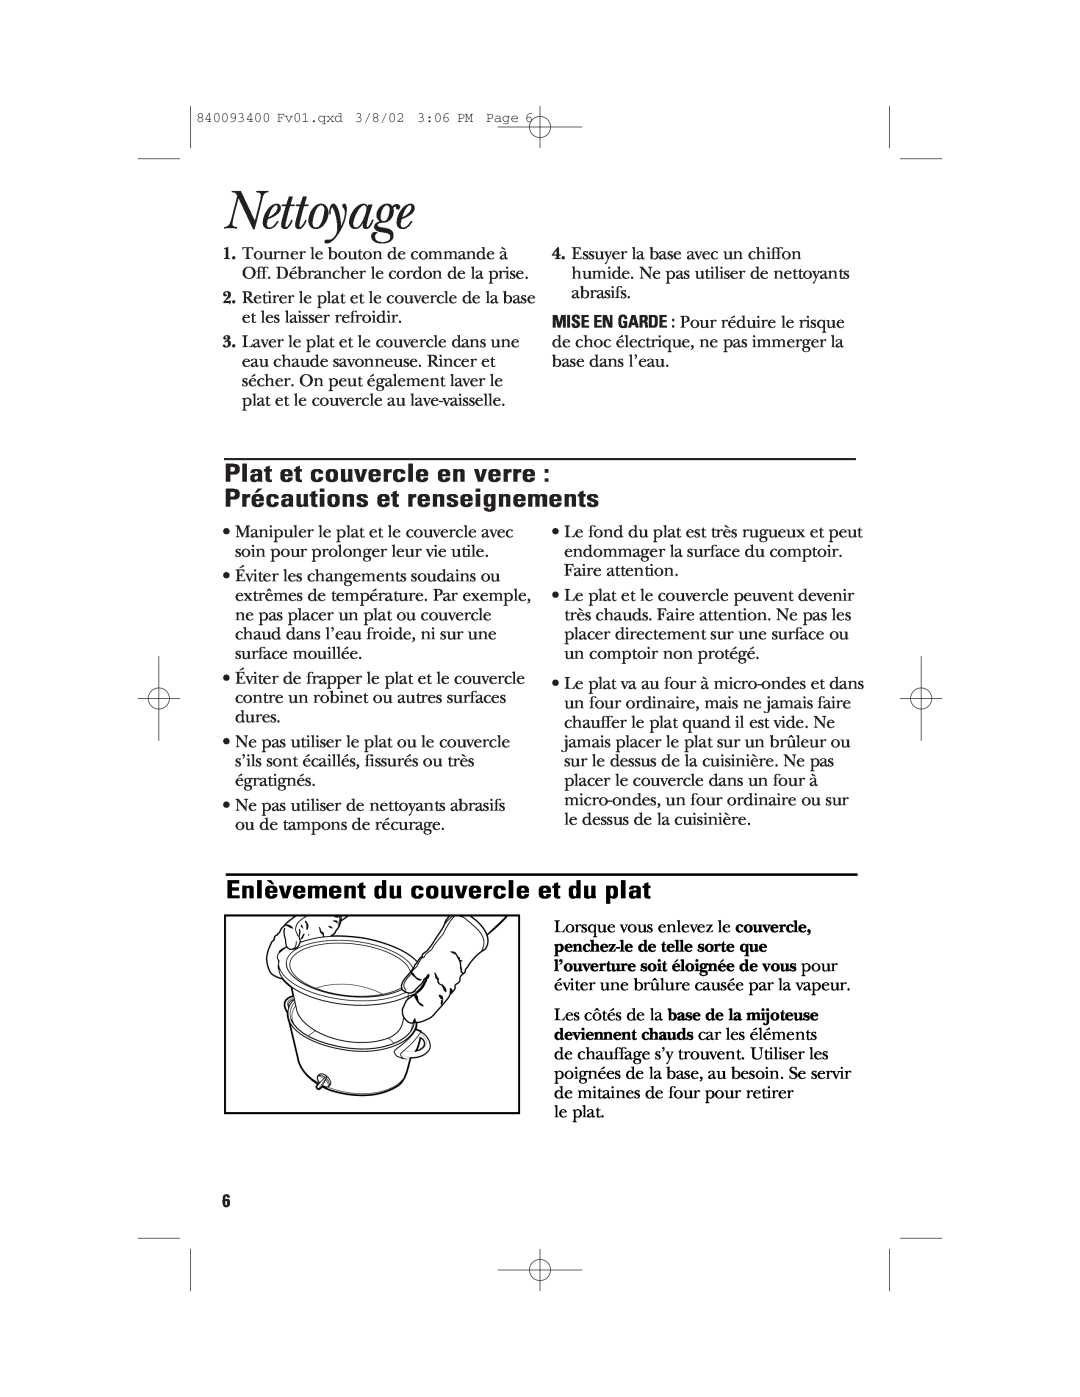 GE 106724 manual Nettoyage, Plat et couvercle en verre Précautions et renseignements, Enlèvement du couvercle et du plat 